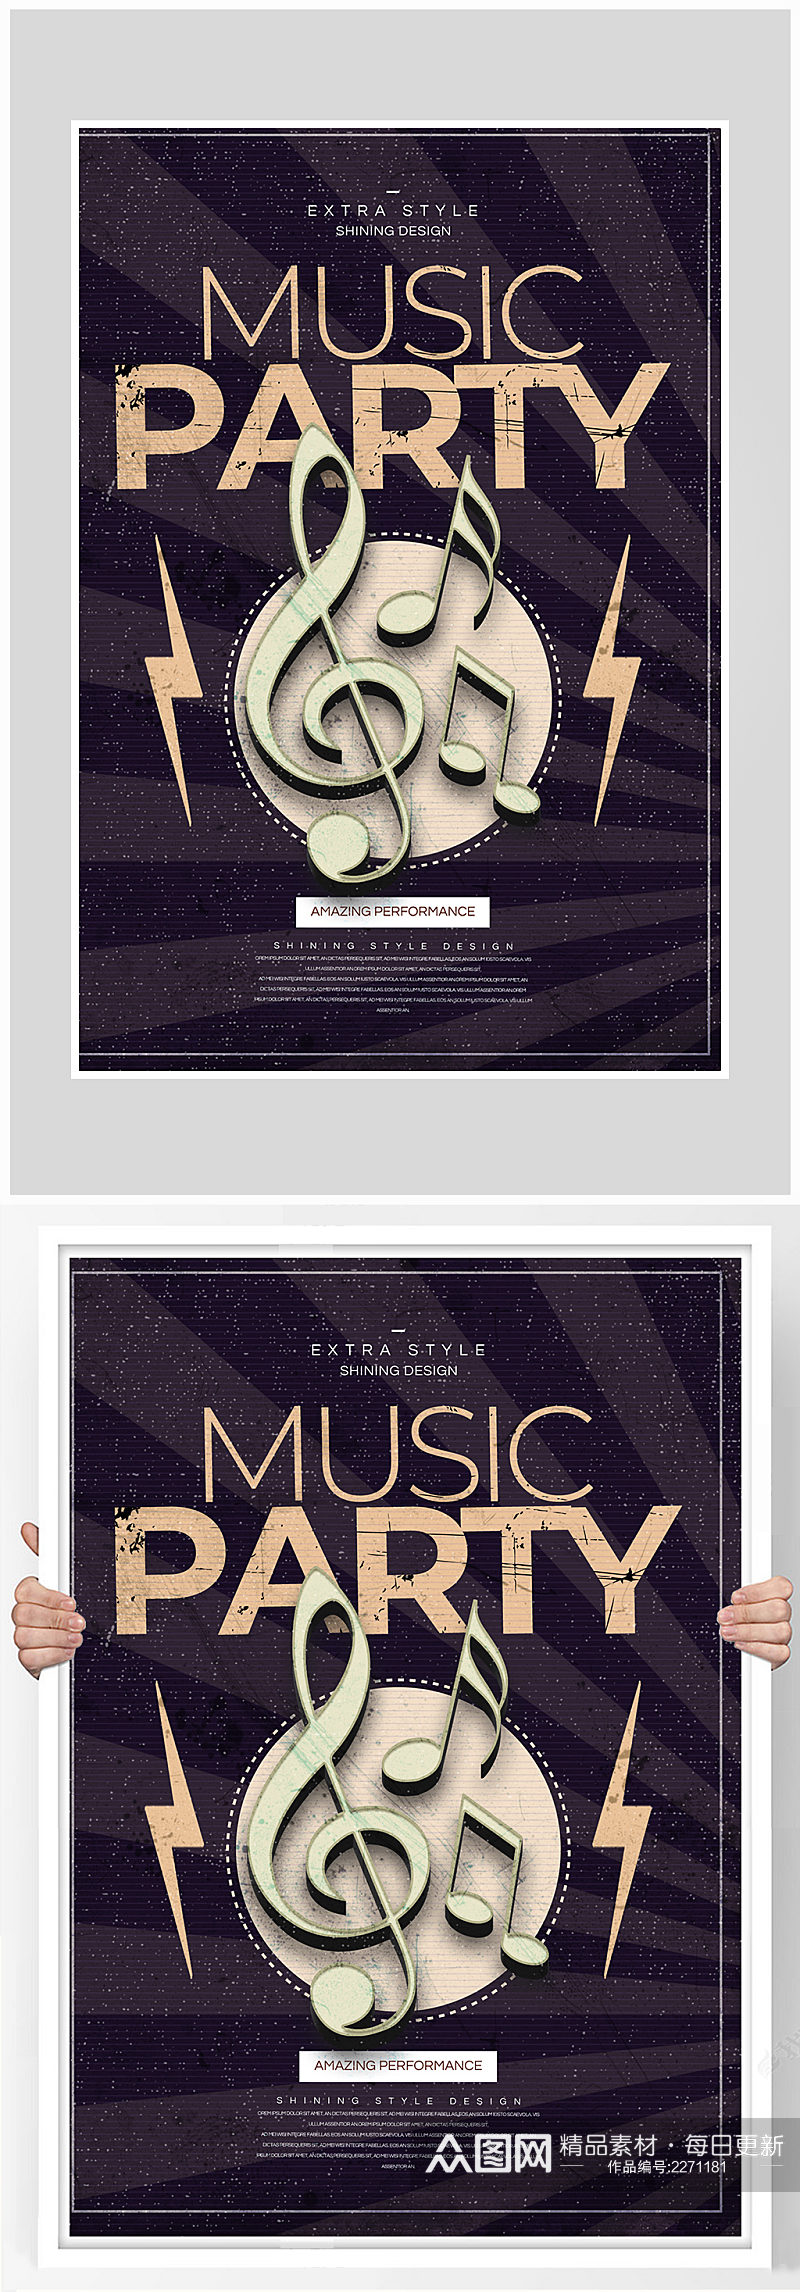 创意质感音乐狂欢派对海报设计素材